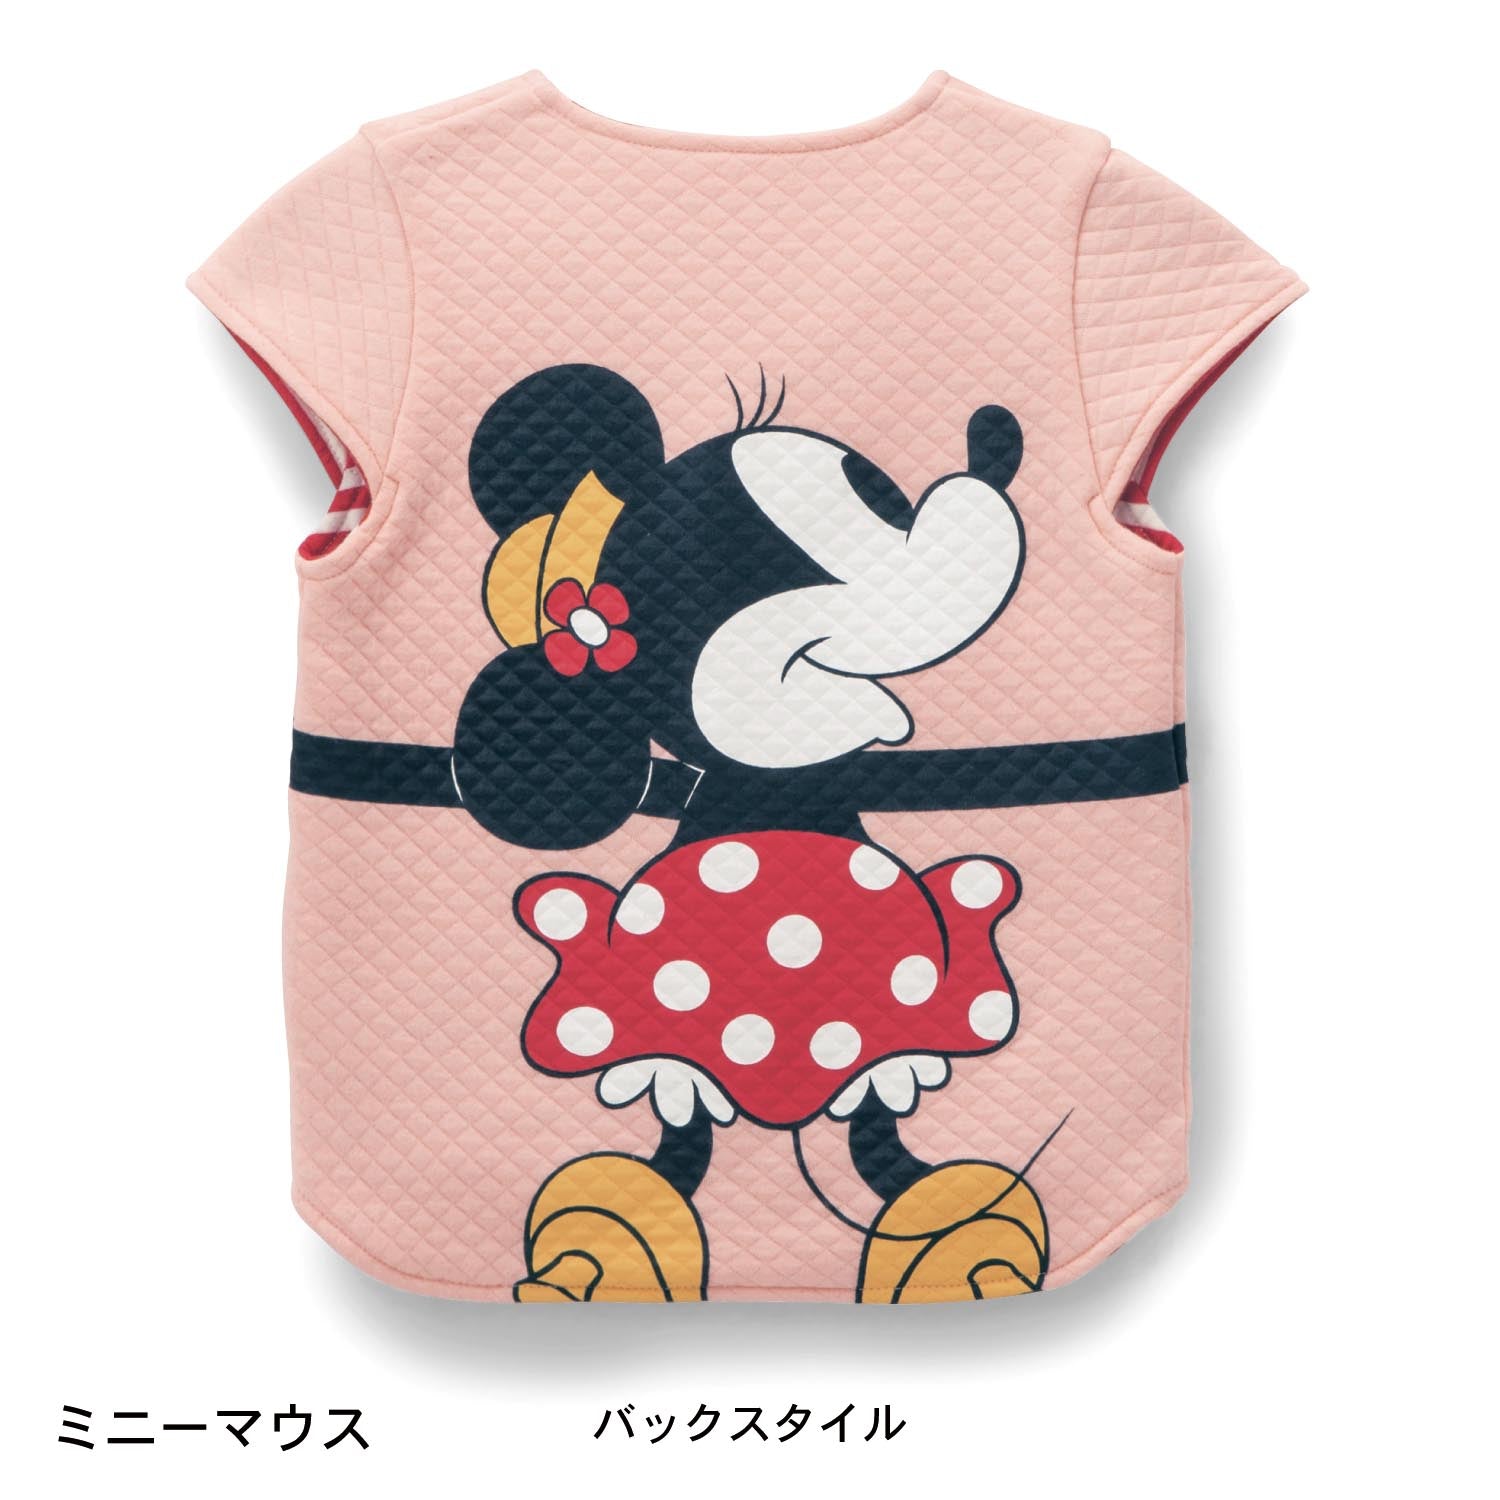 迪士尼卡通人物擁抱可愛針織棉背心 日本兒童服飾